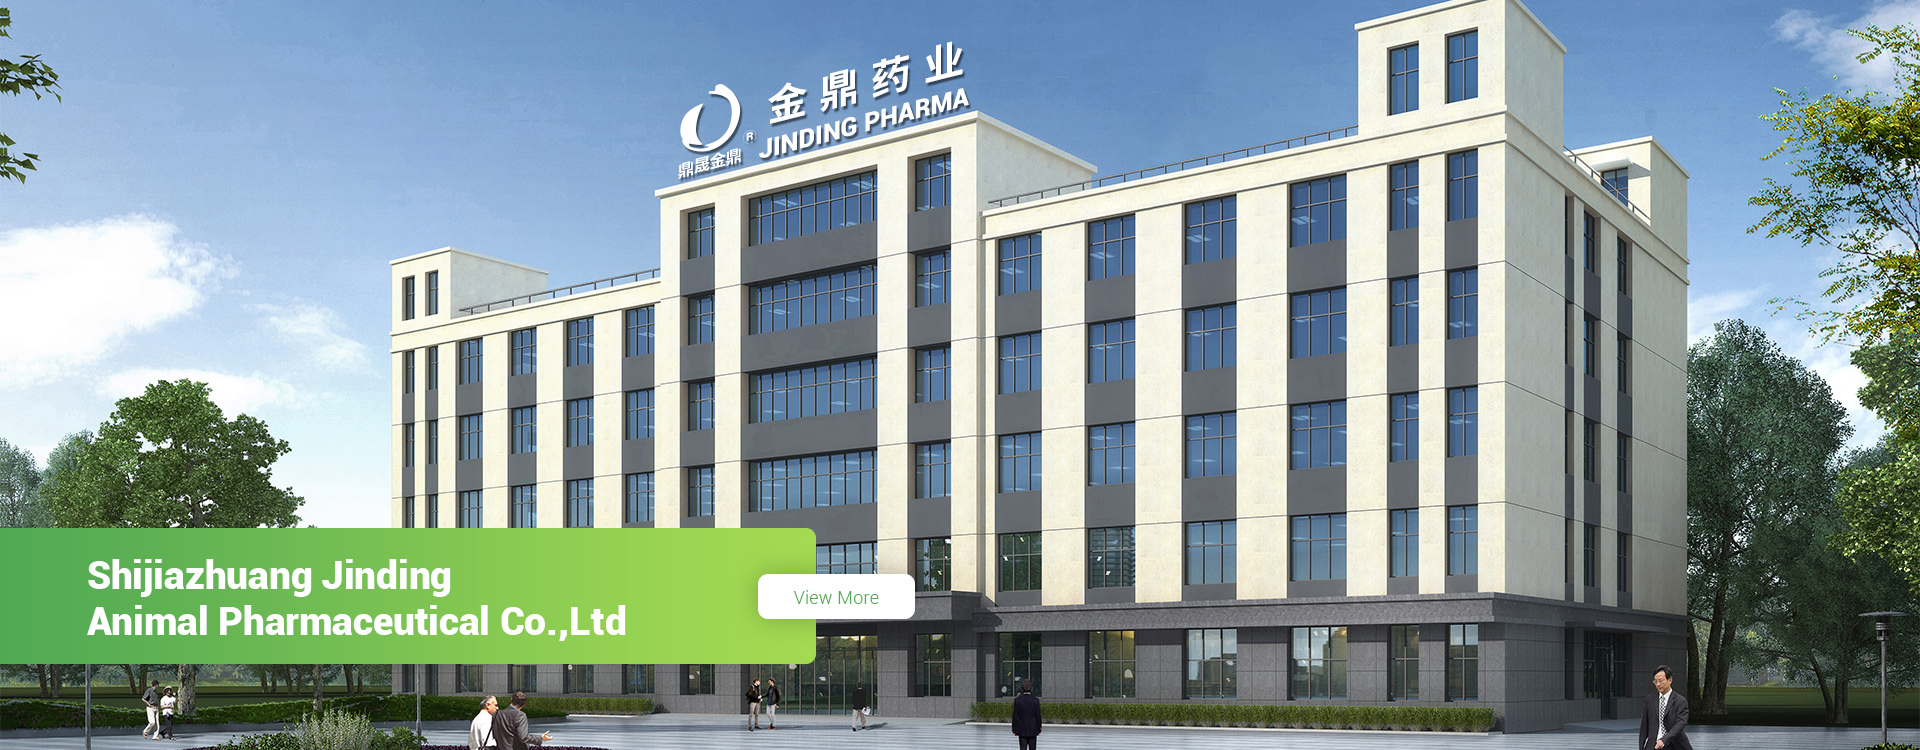 Shijiazhuang Jinding Animal Pharmaceutical Co., Ltd